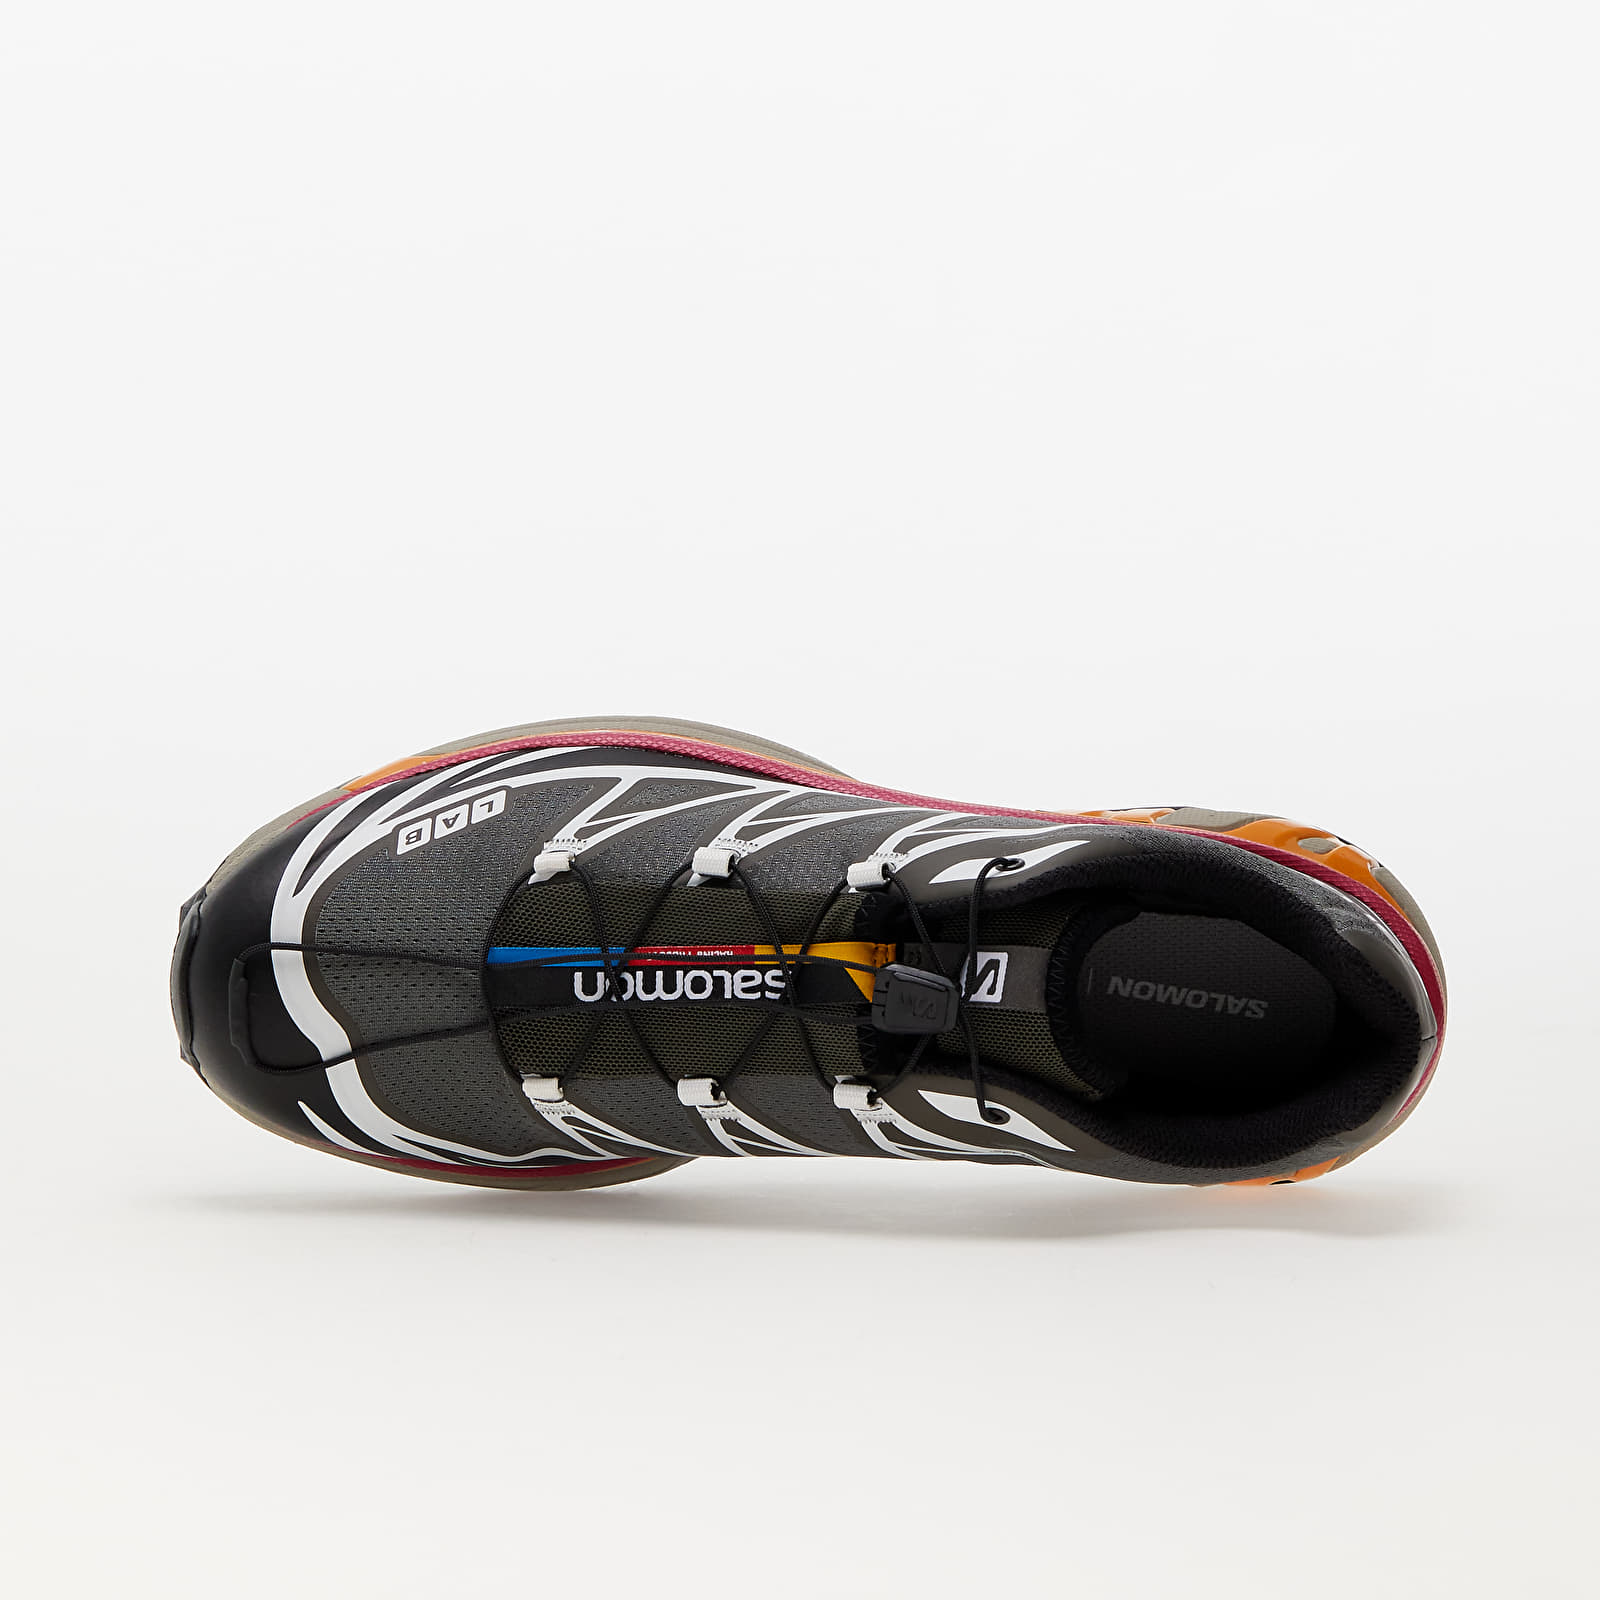 Men's shoes Salomon XT-6 Recut Beluga/ Black/ Russet Orange